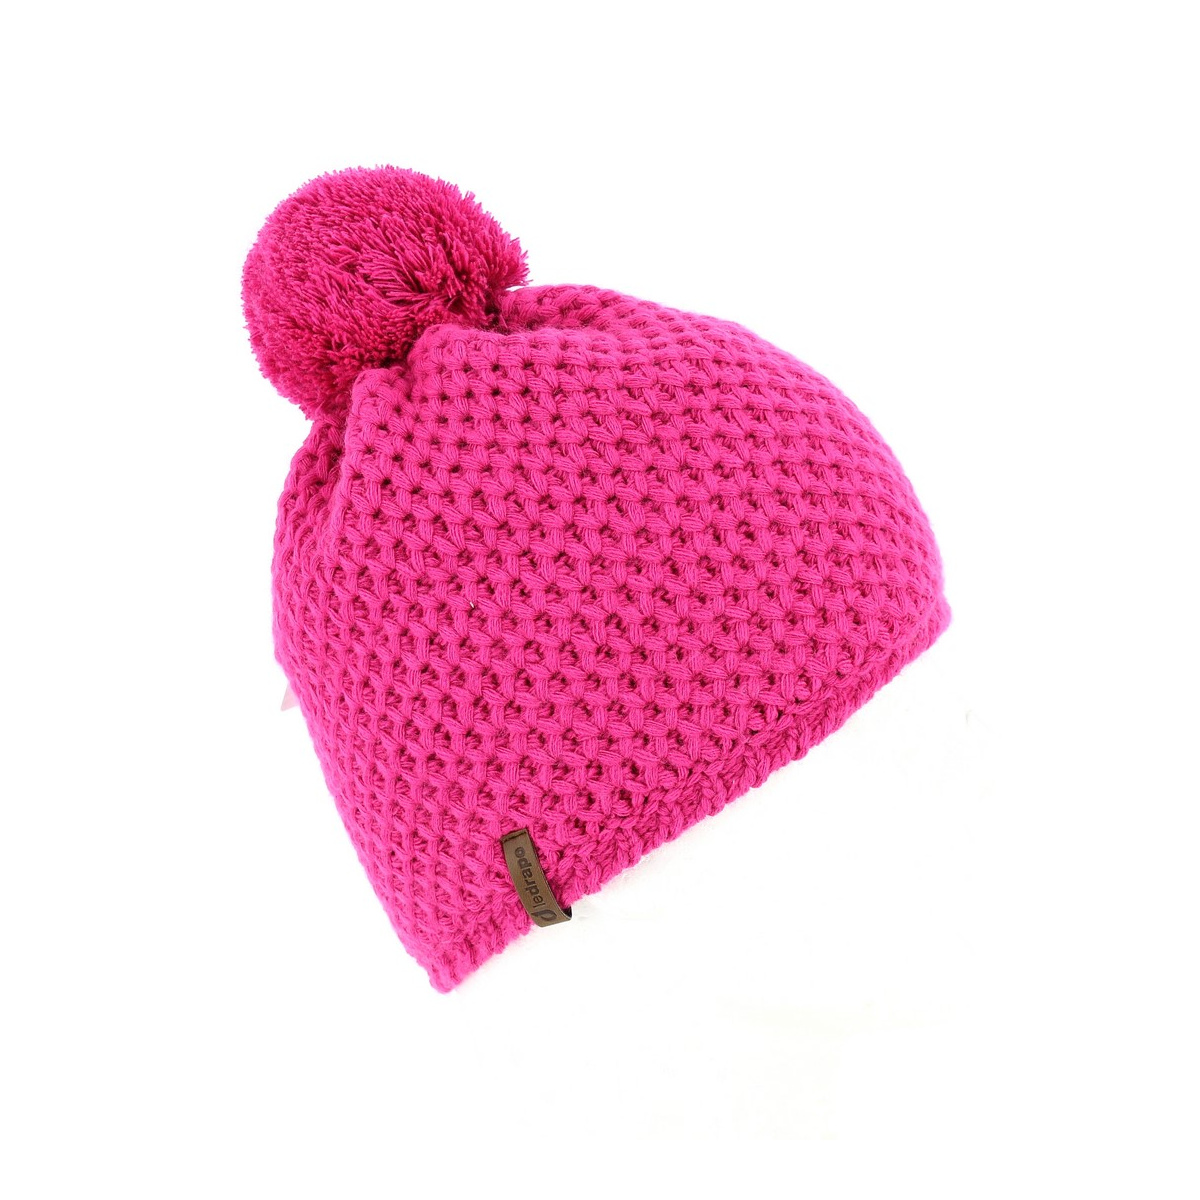 Bonnet de ski femme rose tricot fait main - Un grand marché